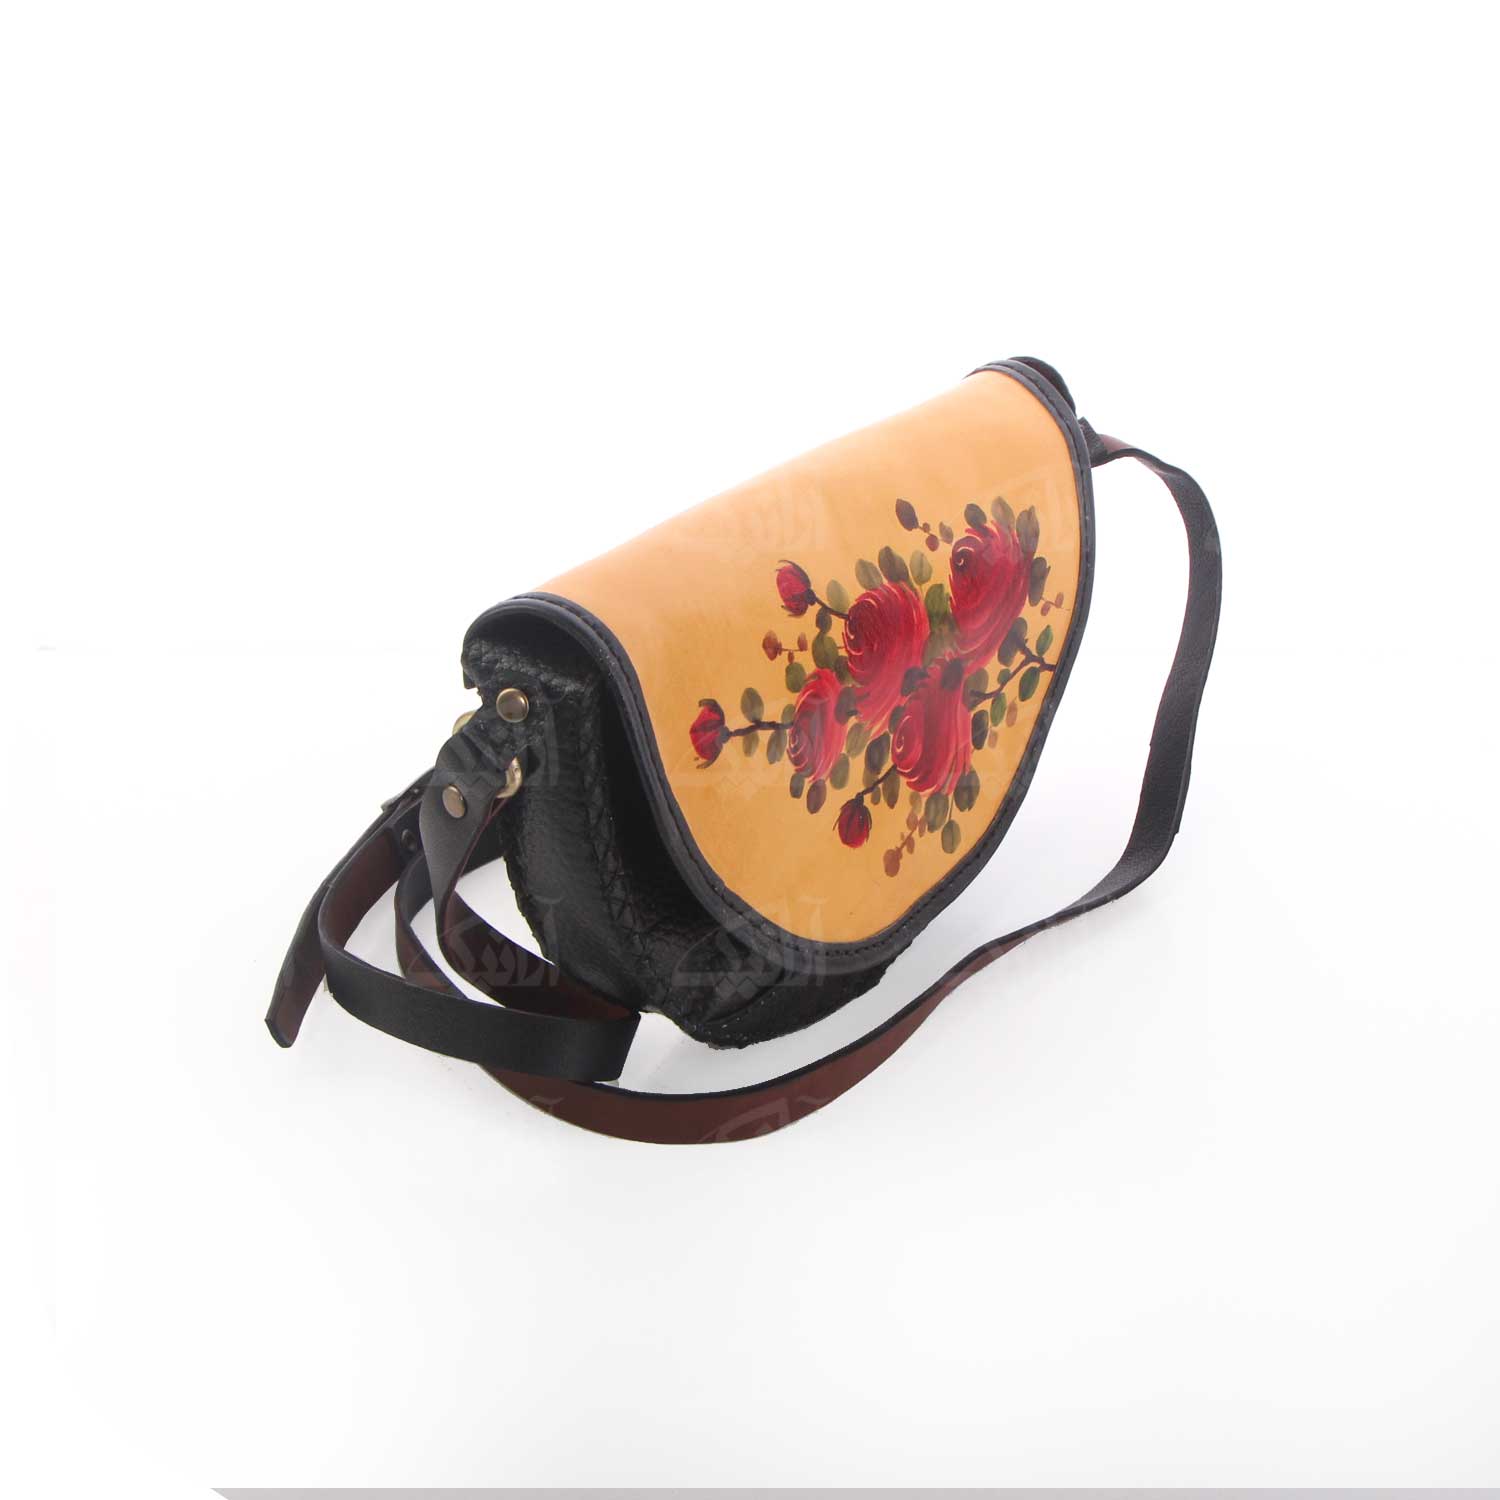 کیف دوشی دست دوز زنانه آرانیک مدل چرمی با تزیینات نقاشی کد 1200400173